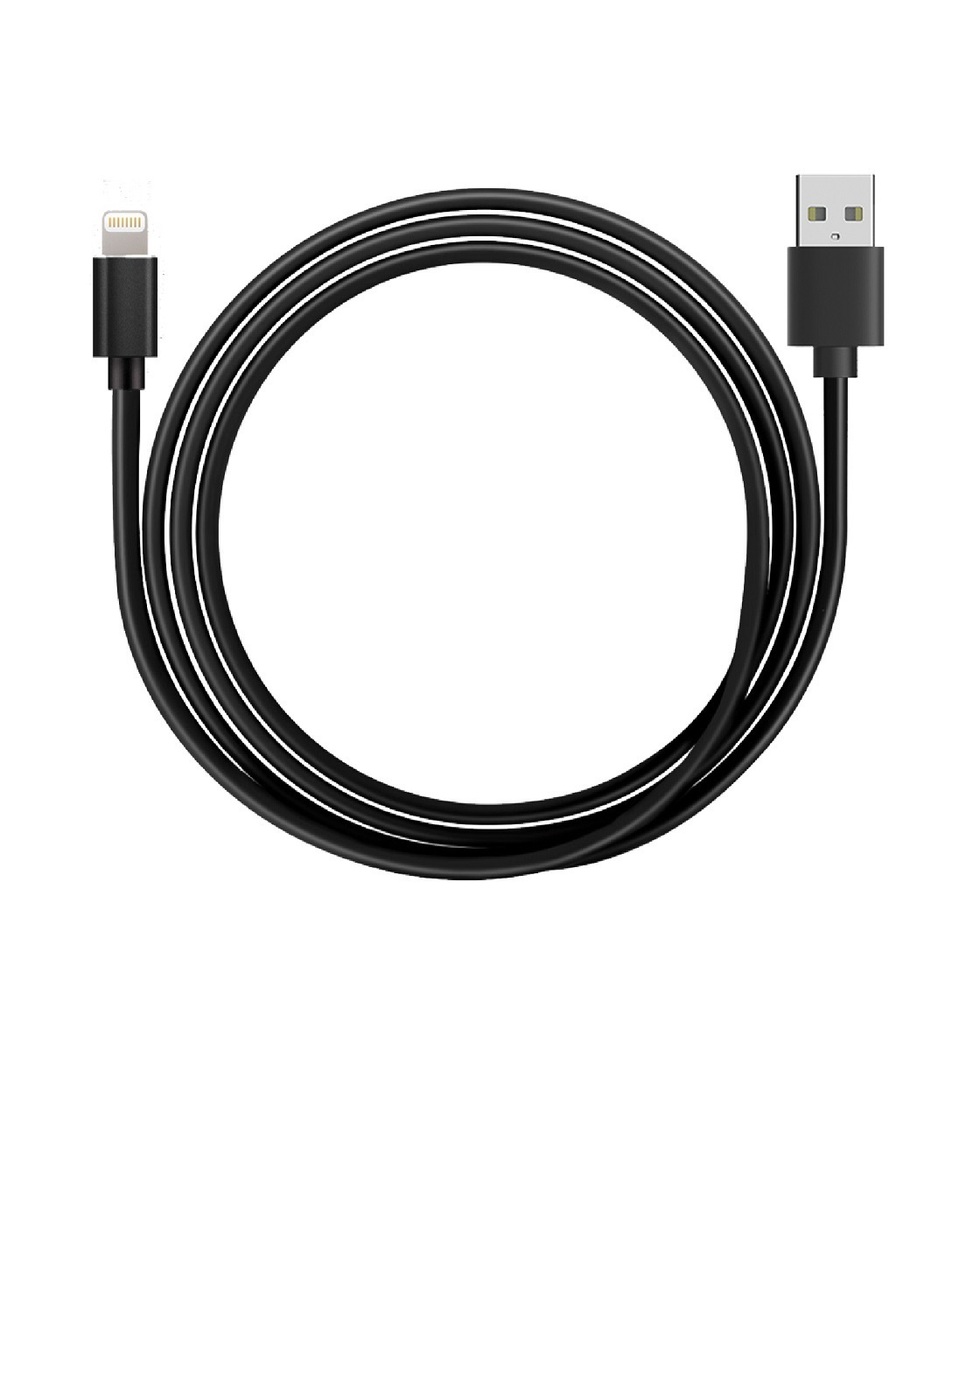 USB-кабель Apple iPhone 5 Dexter DC-180i 1 м черный